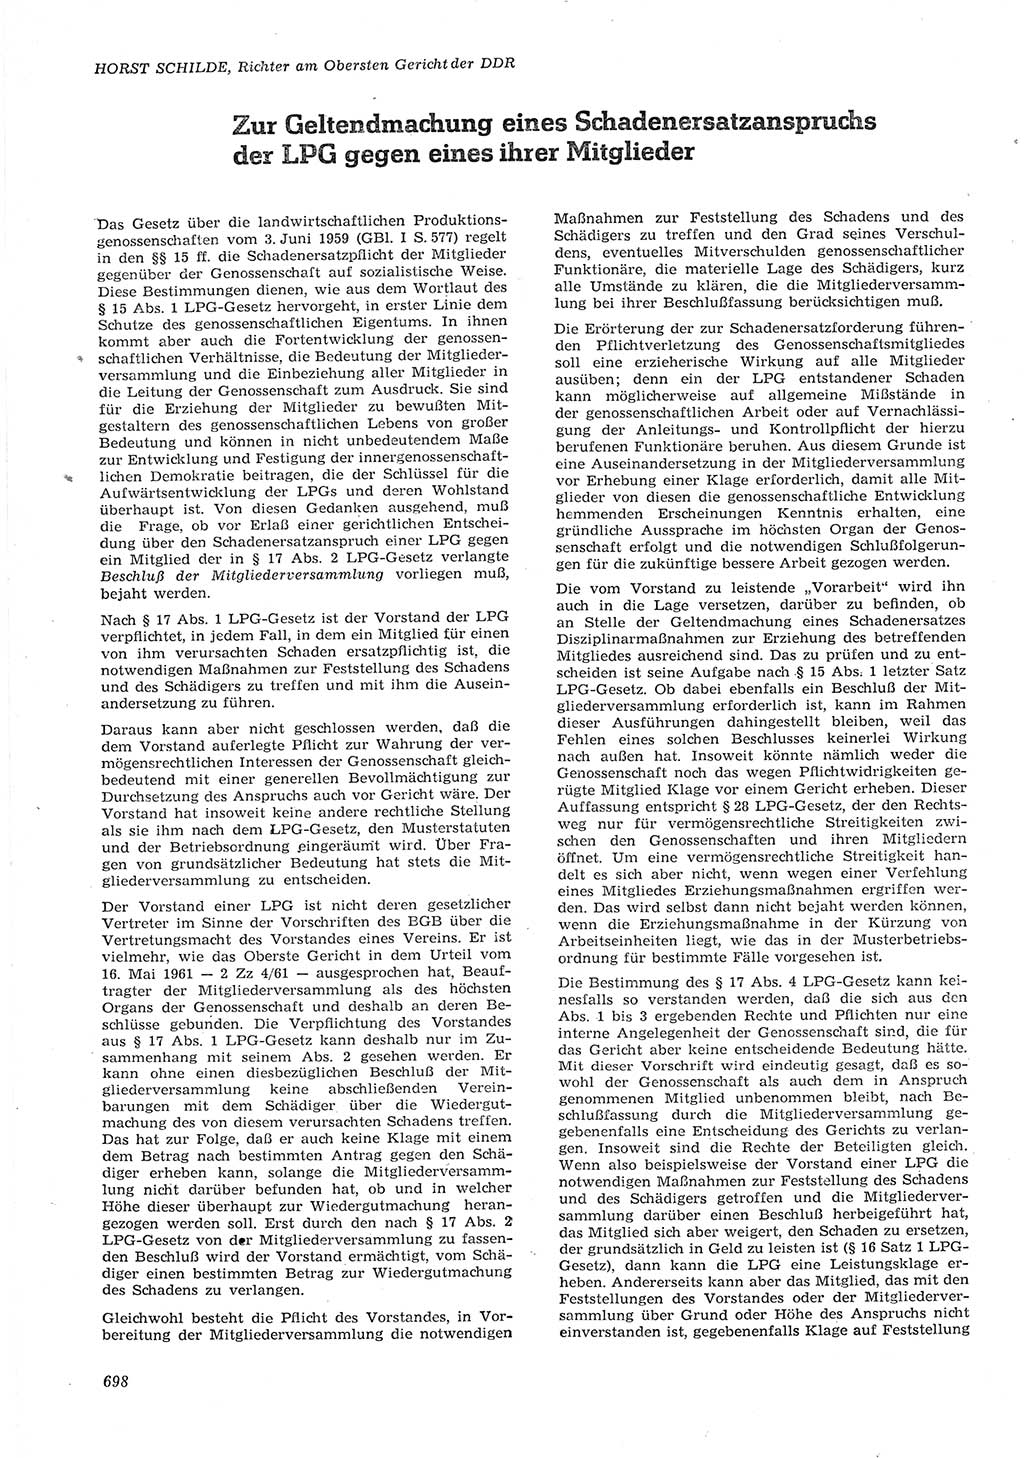 Neue Justiz (NJ), Zeitschrift für Recht und Rechtswissenschaft [Deutsche Demokratische Republik (DDR)], 15. Jahrgang 1961, Seite 698 (NJ DDR 1961, S. 698)